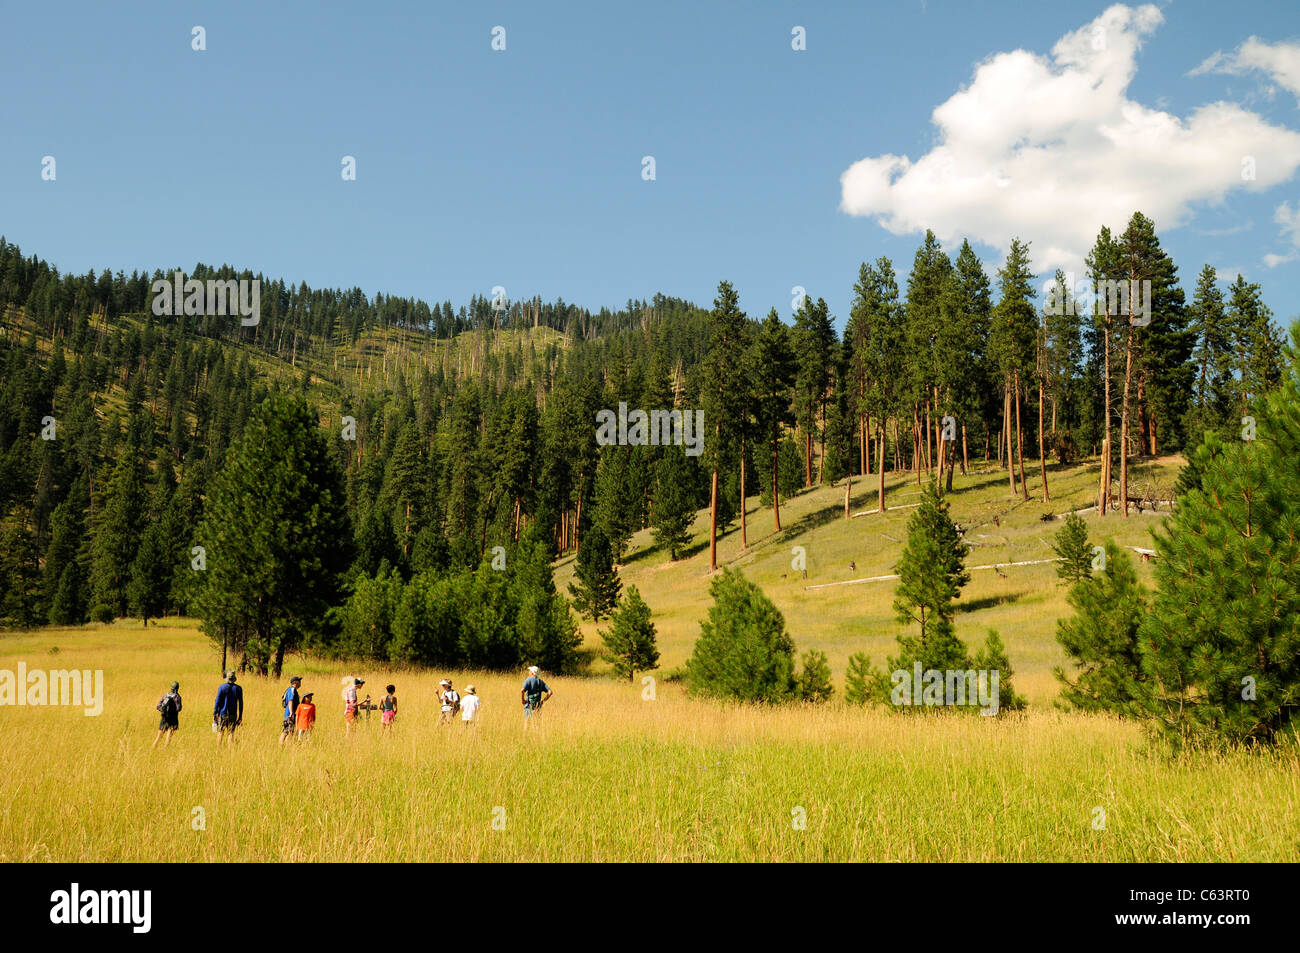 Groupe des chevrons de la rivière randonnées en prairie pittoresque appelé Pied de Corbeau Ranch dans les montagnes de l'Idaho de la rivière Salmon Banque D'Images